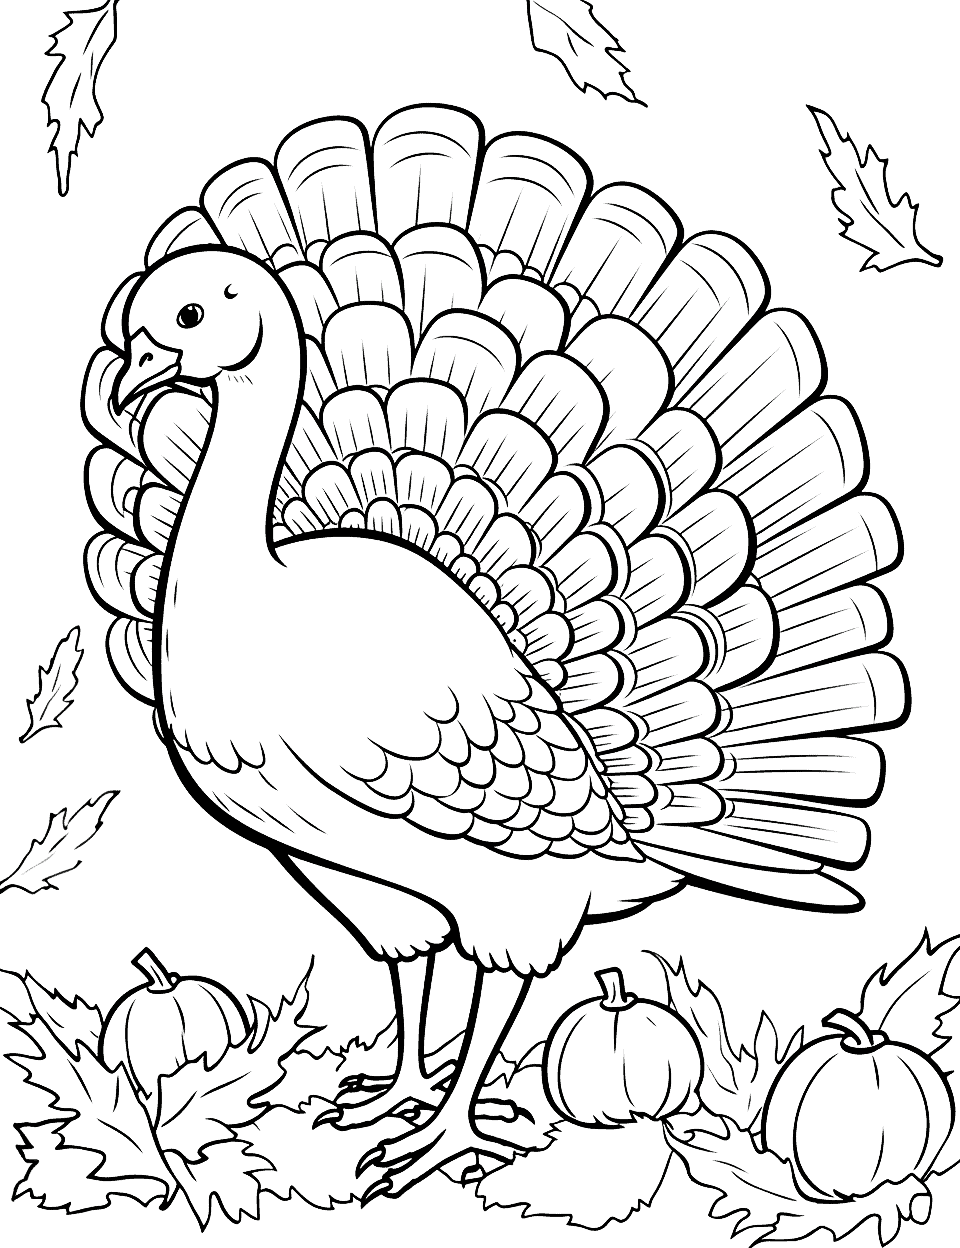 Wild Turkey in November Coloring Page - A detailed coloring page featuring a wild turkey in a fall scene, set in November.